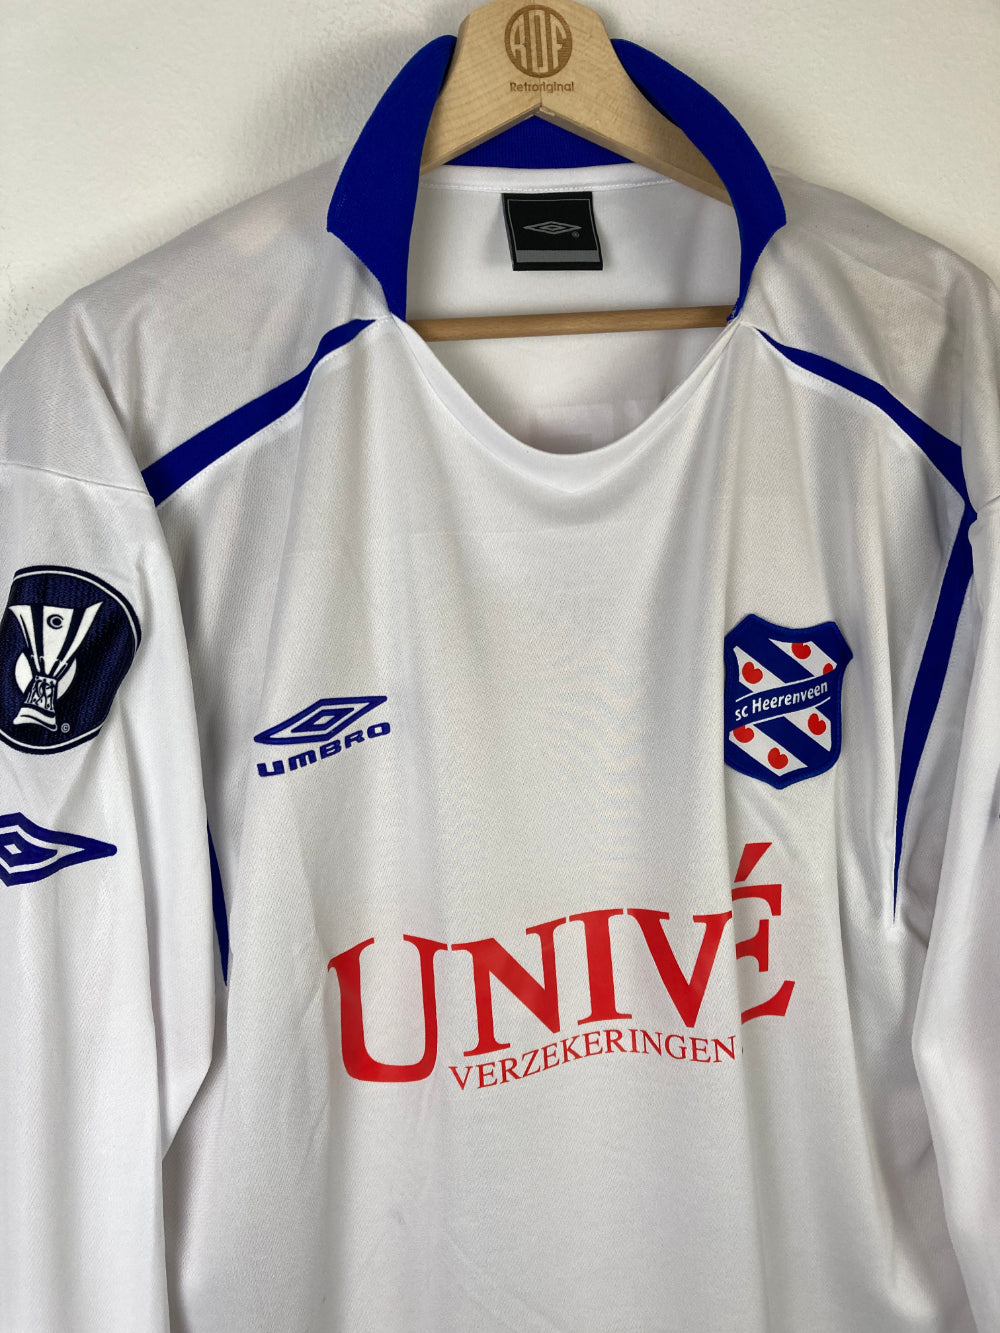 
                  
                    Original sc Heerenveen *Matchworn* Away Jersey 2005-2006 #16 of Sebastiaan Steur - XL
                  
                